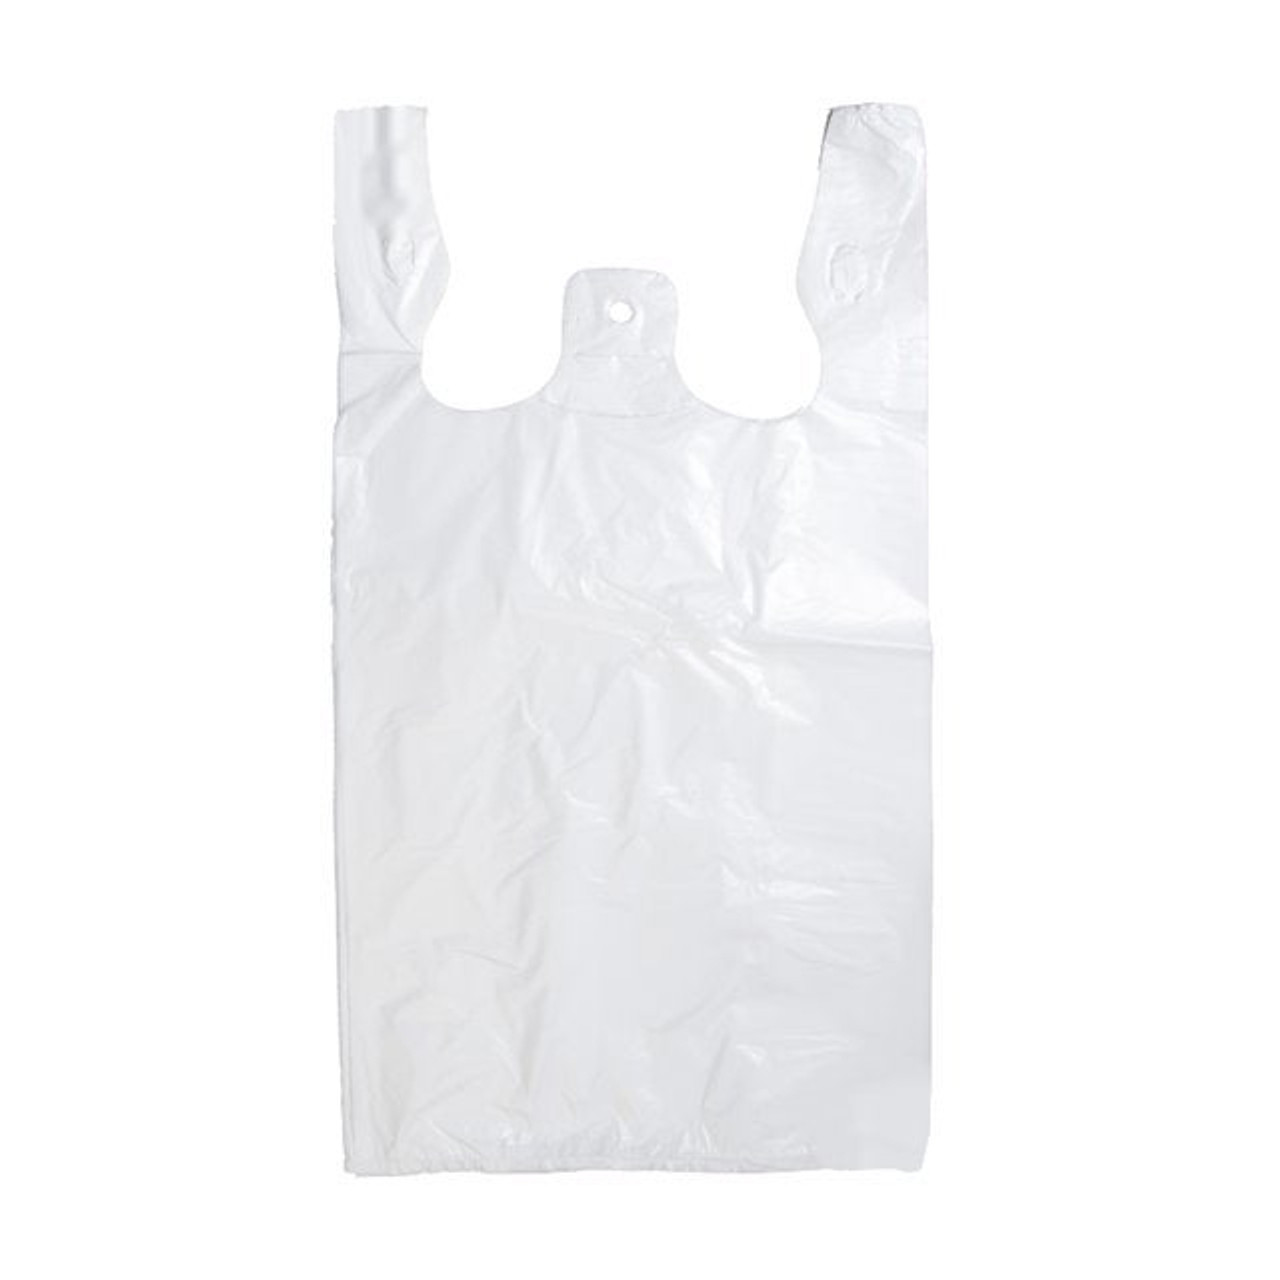 Gordon Choice White Plastic T-Shirt Bags, 11 X 6 X 20In | 1000UN/Unit, 1 Unit/Case